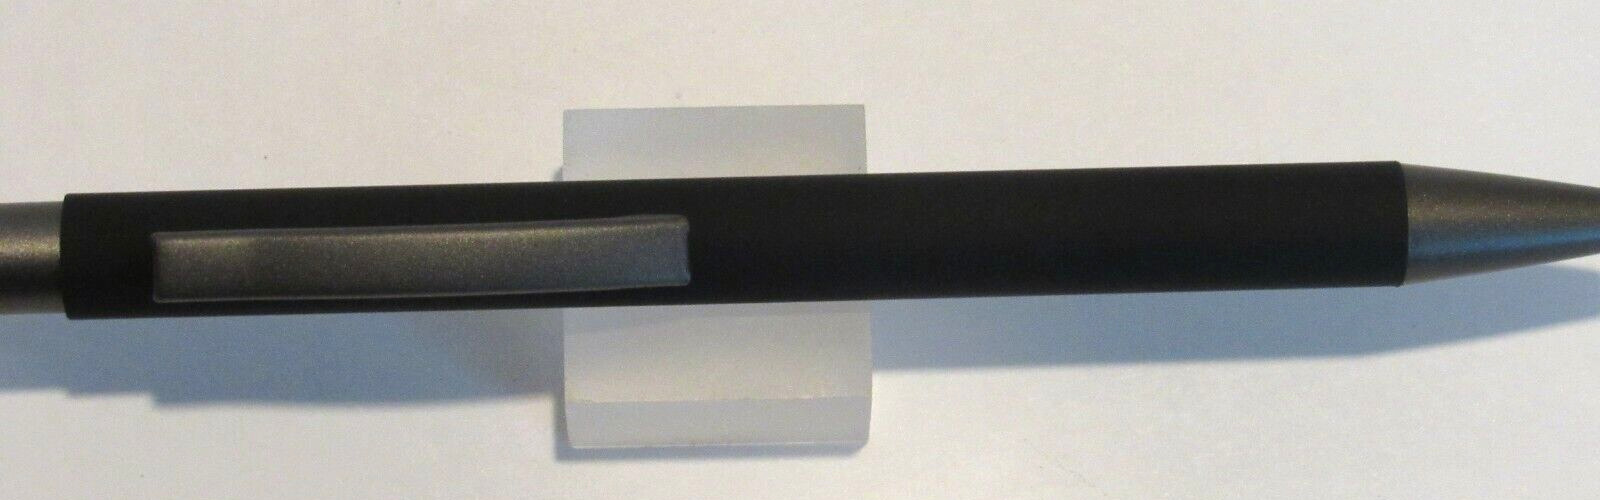 Terzetti Model COMFY Metal ClickTop Ballpoint Pen-Rubberized Body-BLACK